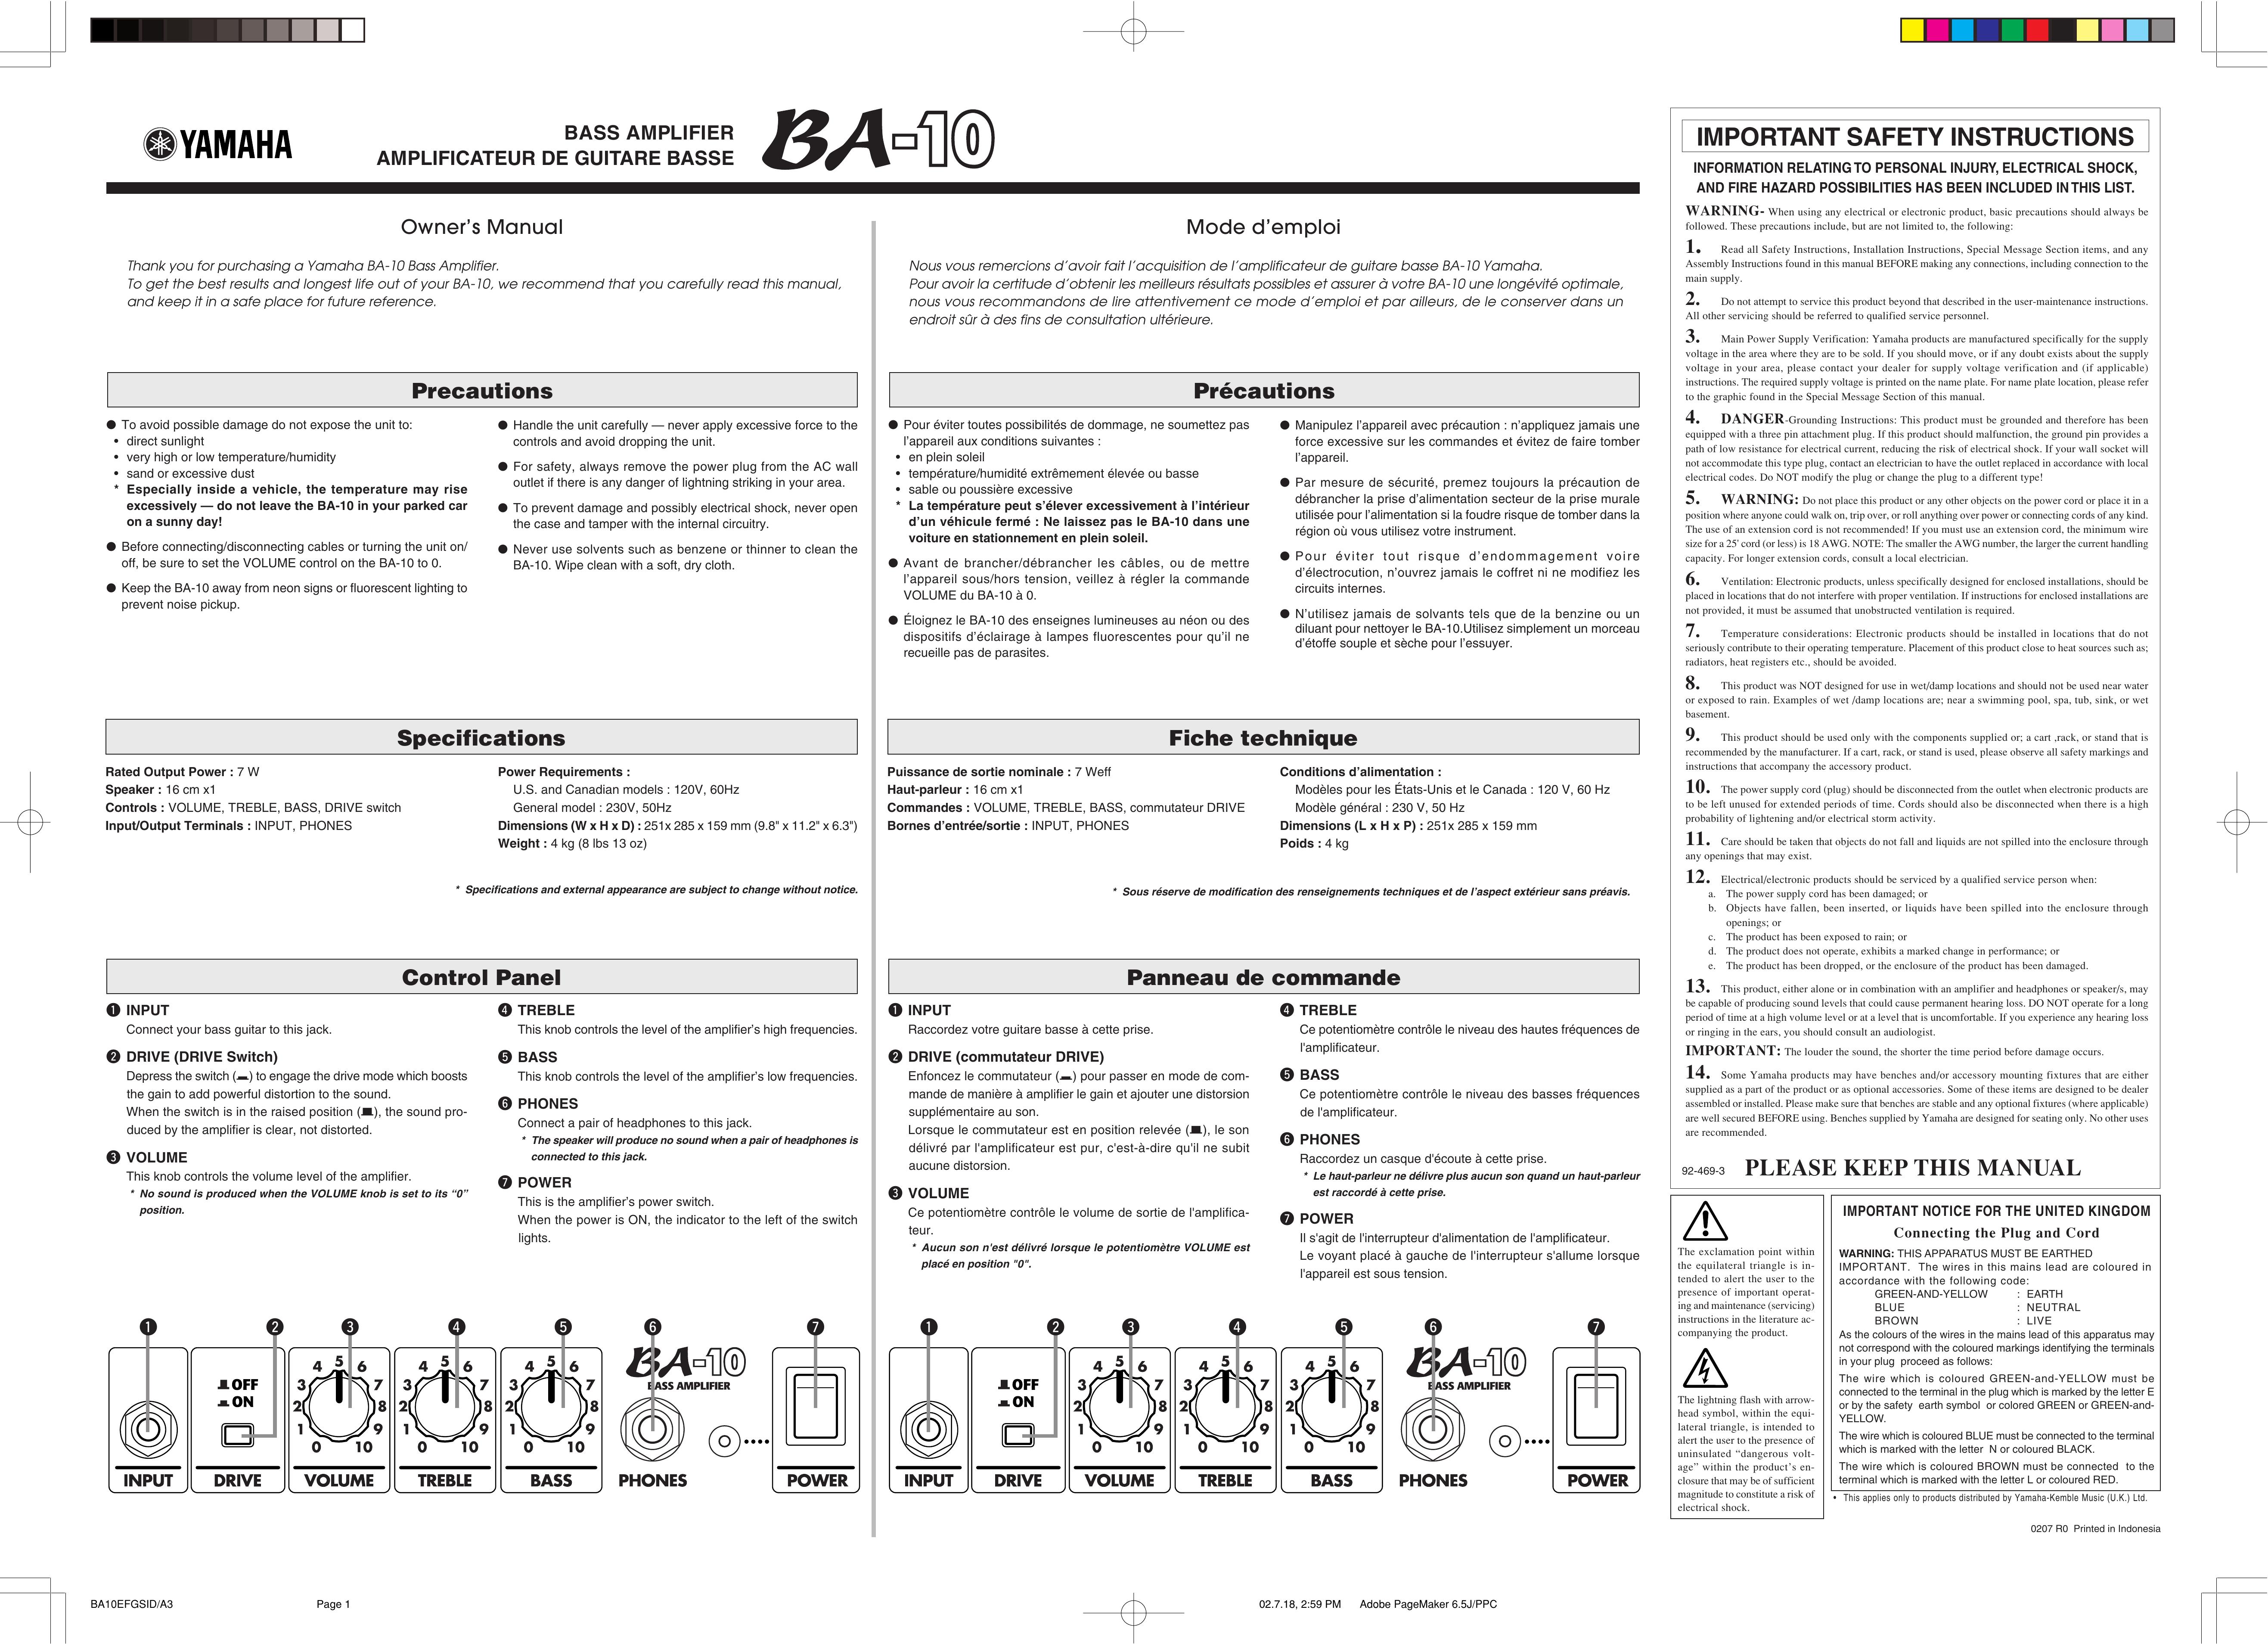 Yamaha BA-10 Musical Instrument Amplifier User Manual